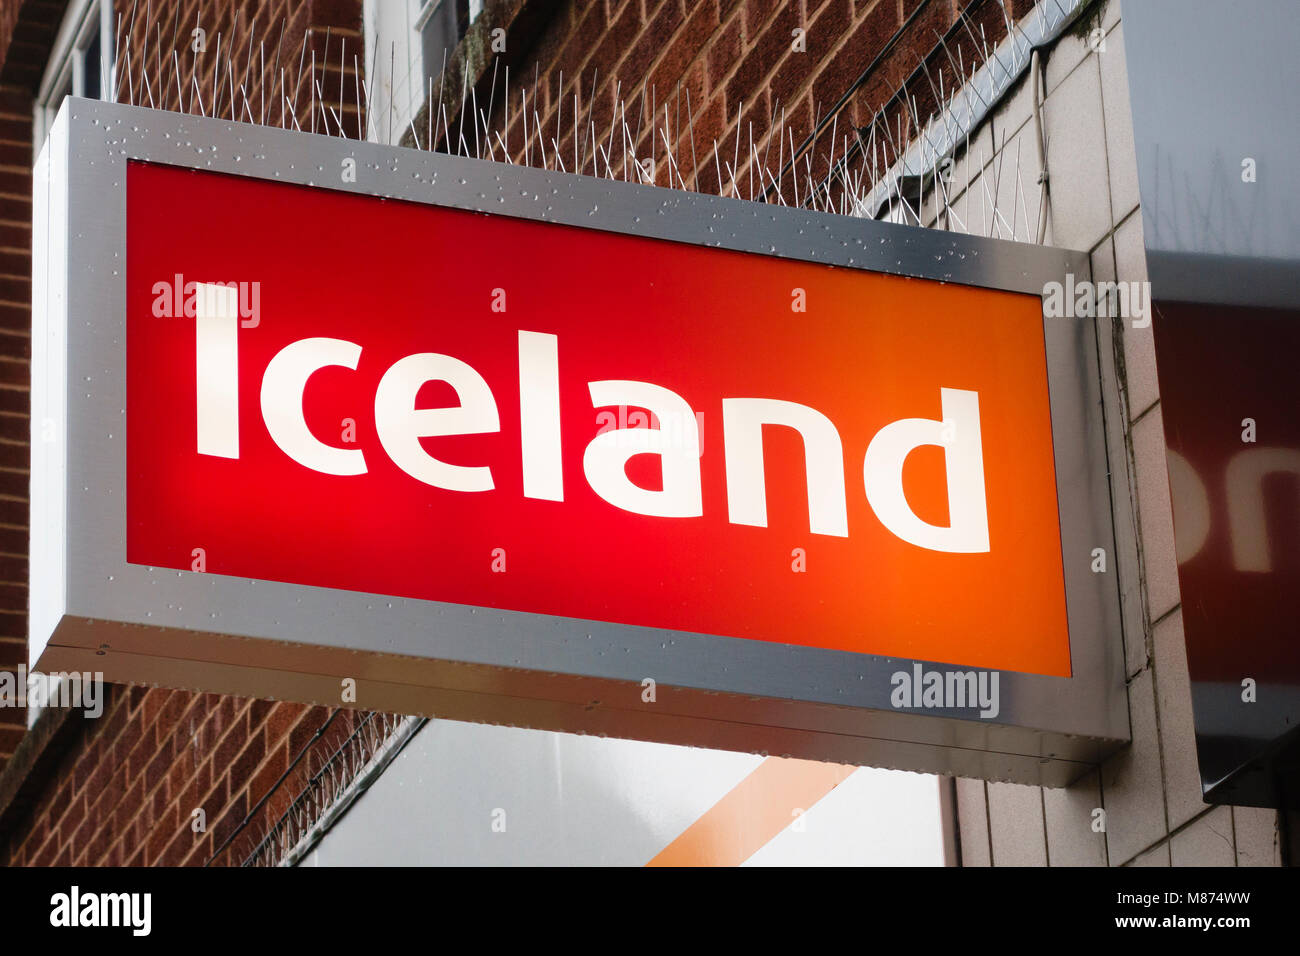 Regno Unito. Cartello luminoso su un ramo dell'Islanda cibi congelati catena di negozi, equipaggiato con anti pigeon spikes Foto Stock